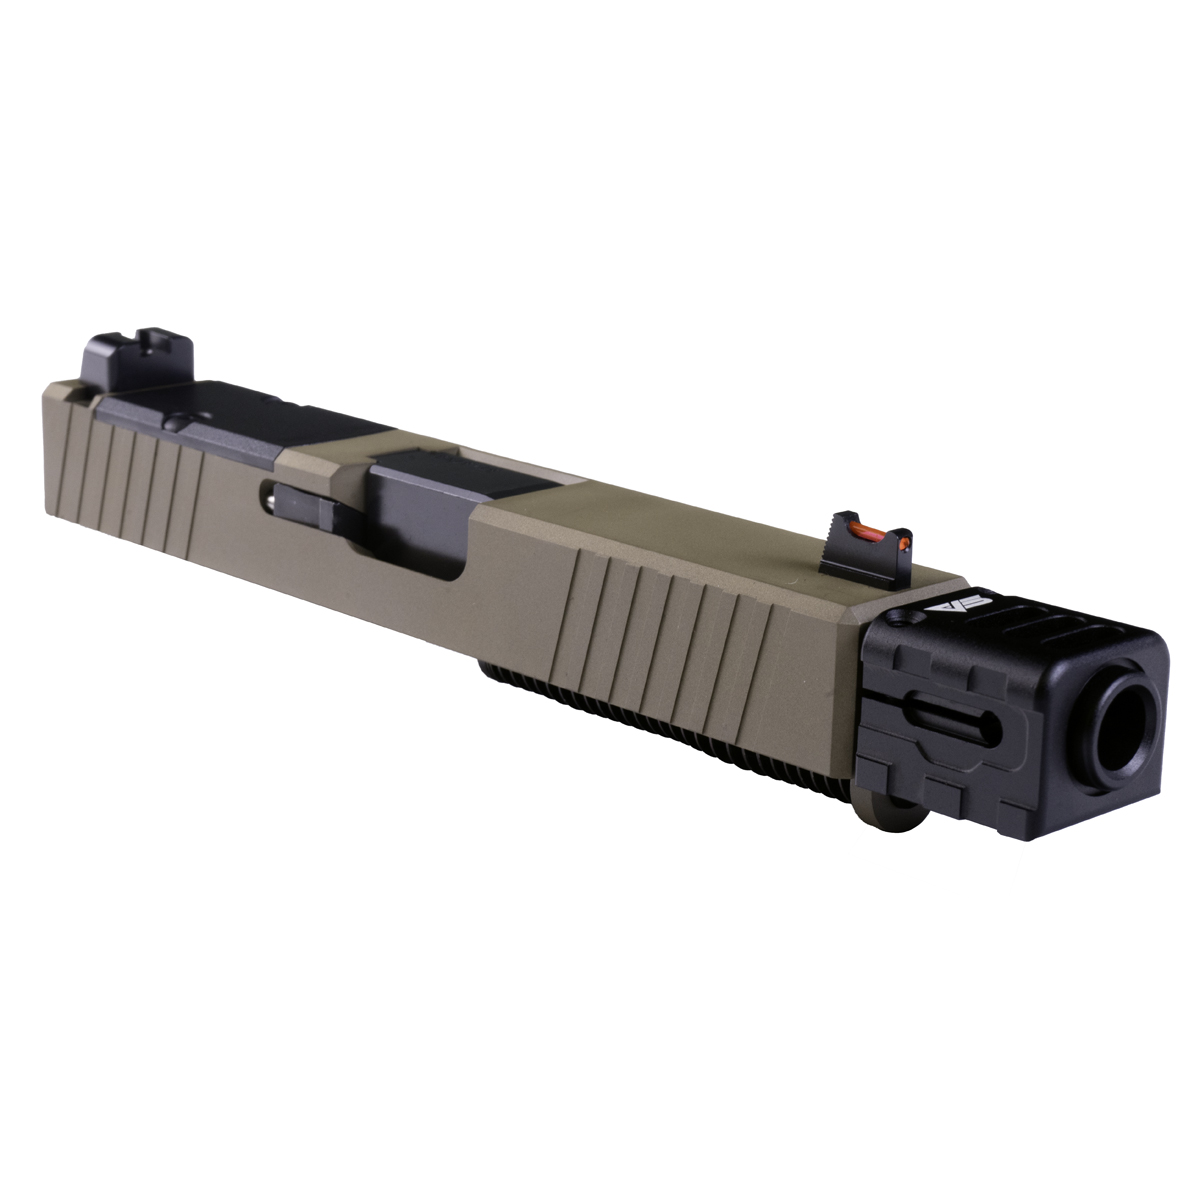 MMC 'Stormchaser' 9mm Complete Slide Kit - Glock 19  Compatible